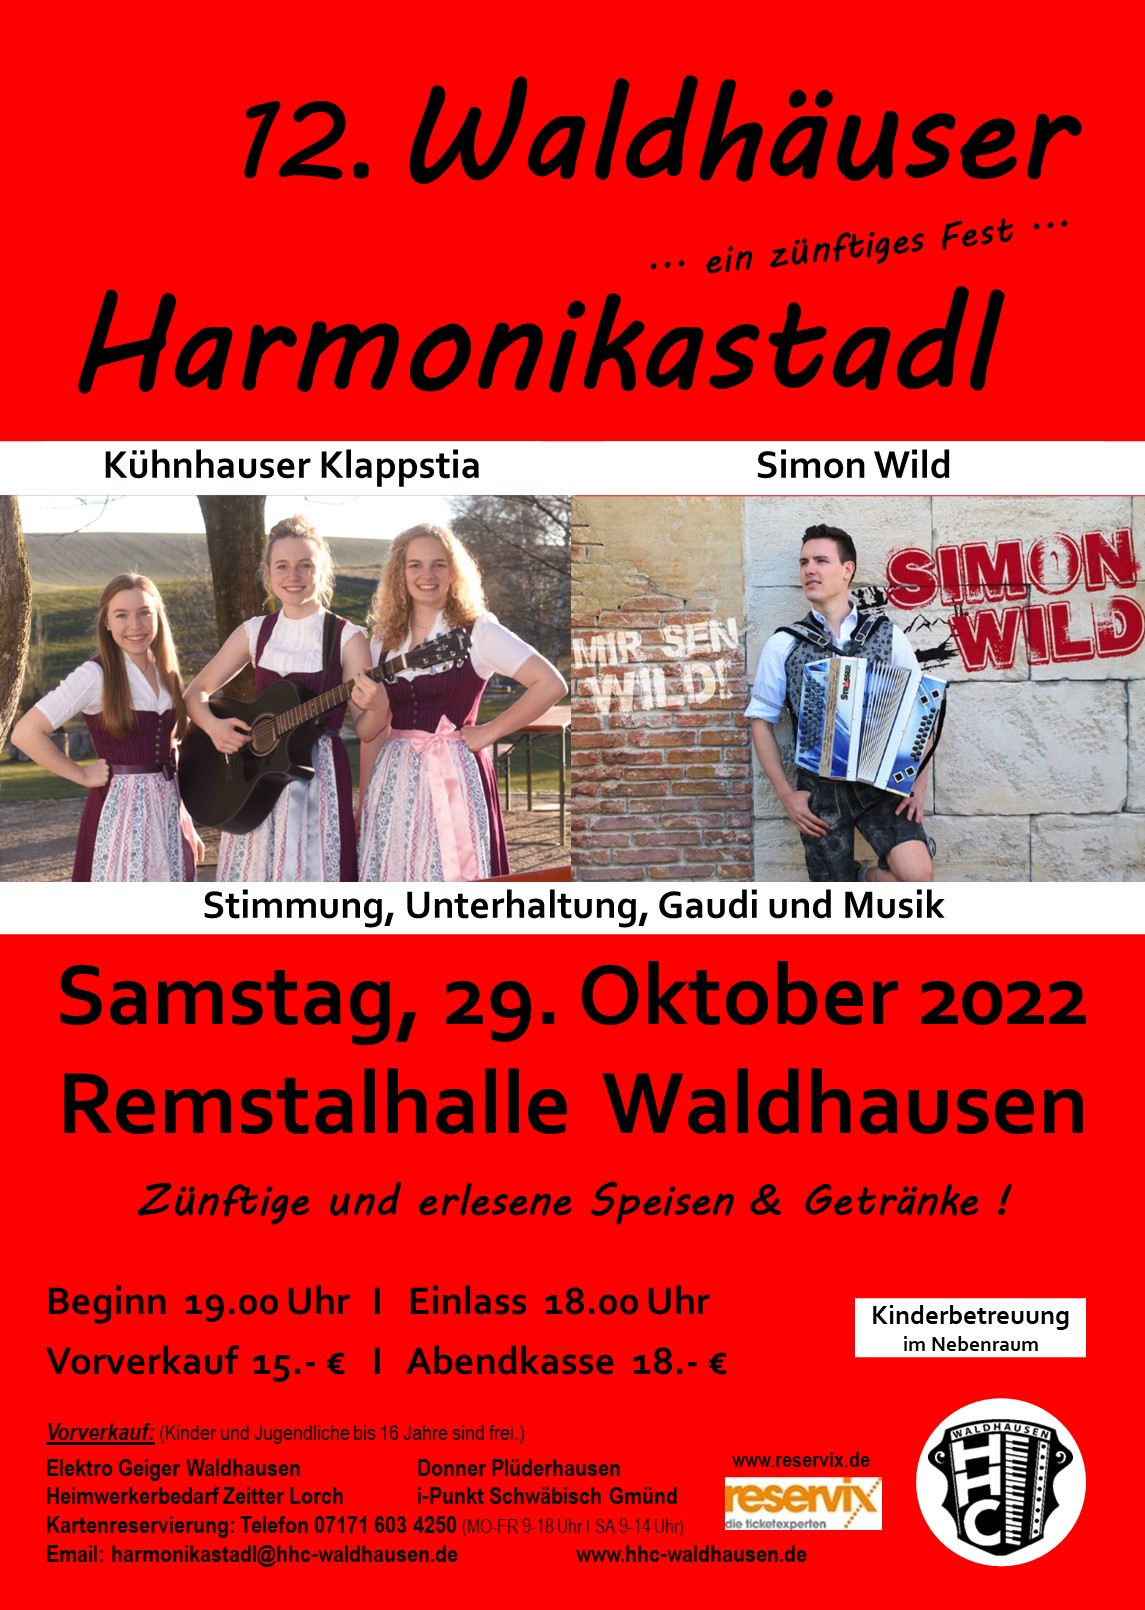 Waldhäuser Harmonikastadl